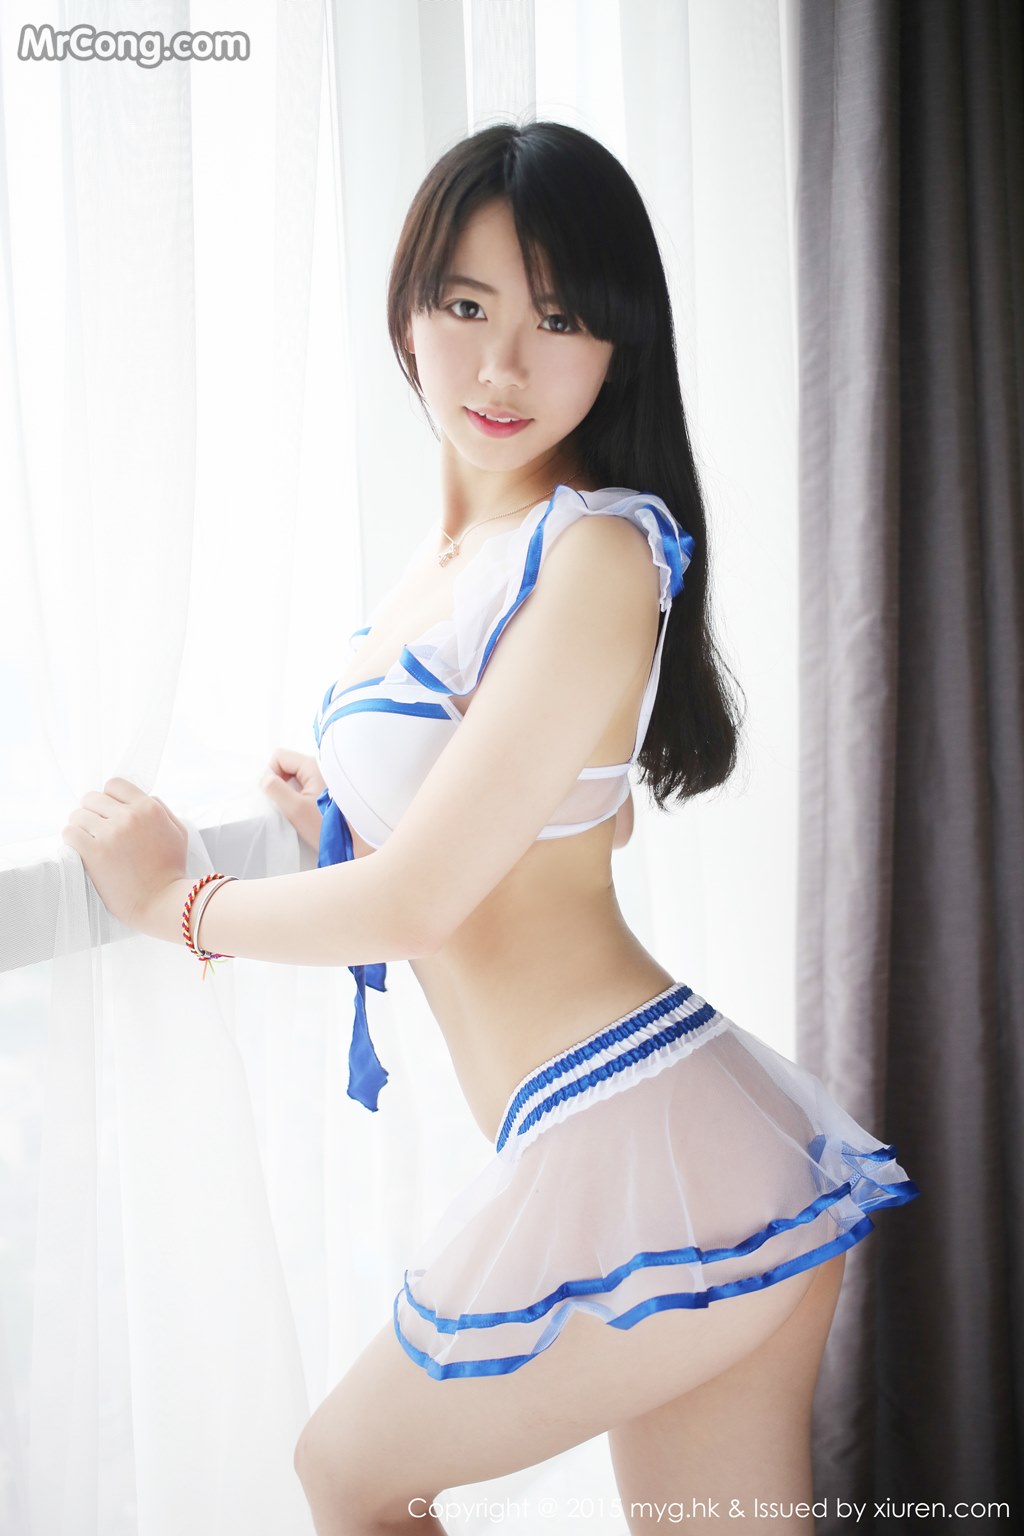 MyGirl Vol.116: Model Jessie (徐 小宝) (41 photos)